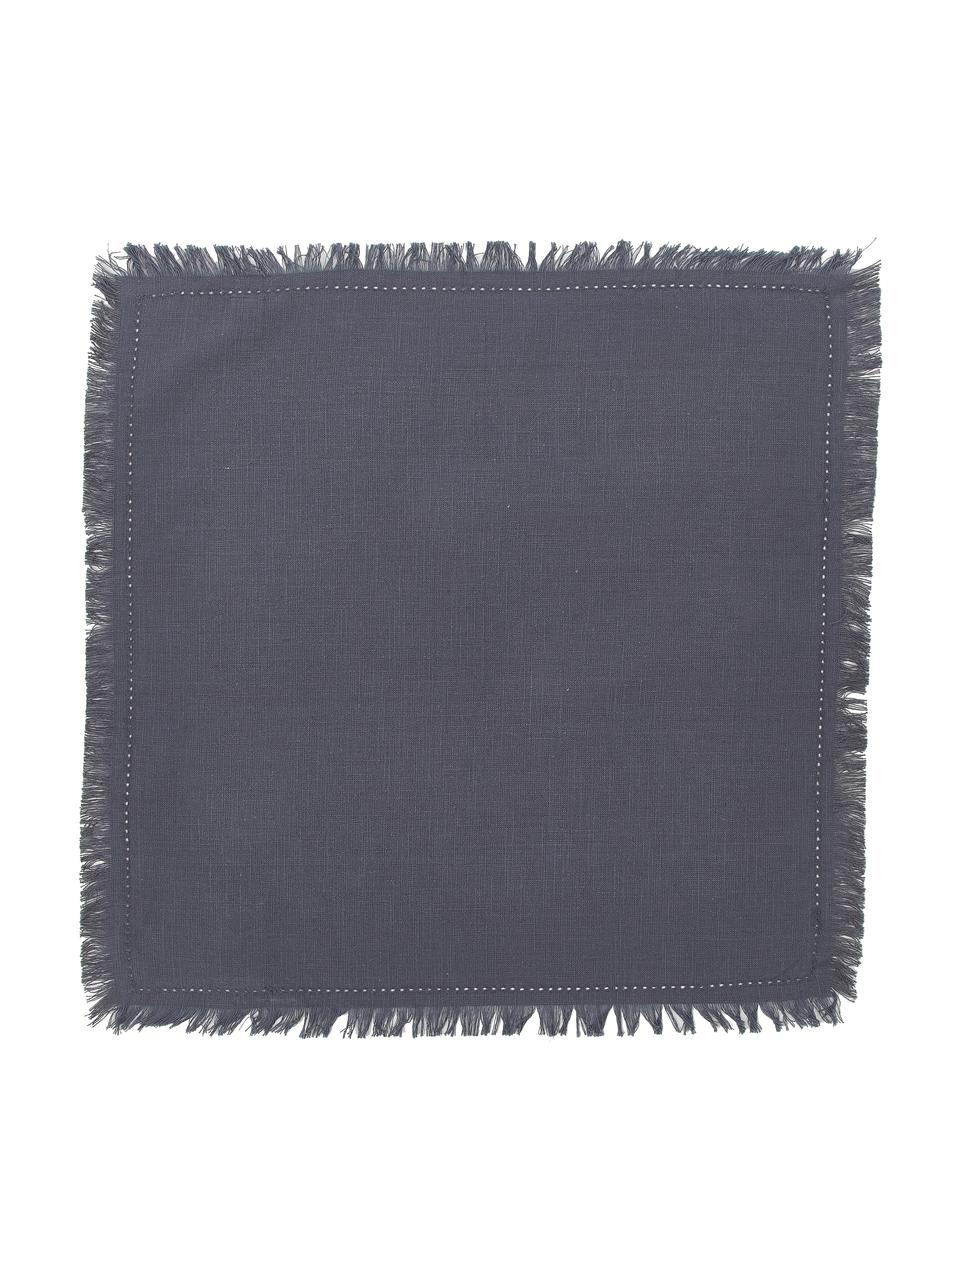 Serwetka z tkaniny Henley, 2 szt., 100% bawełna, Ciemny niebieski, S 45 x D 45 cm